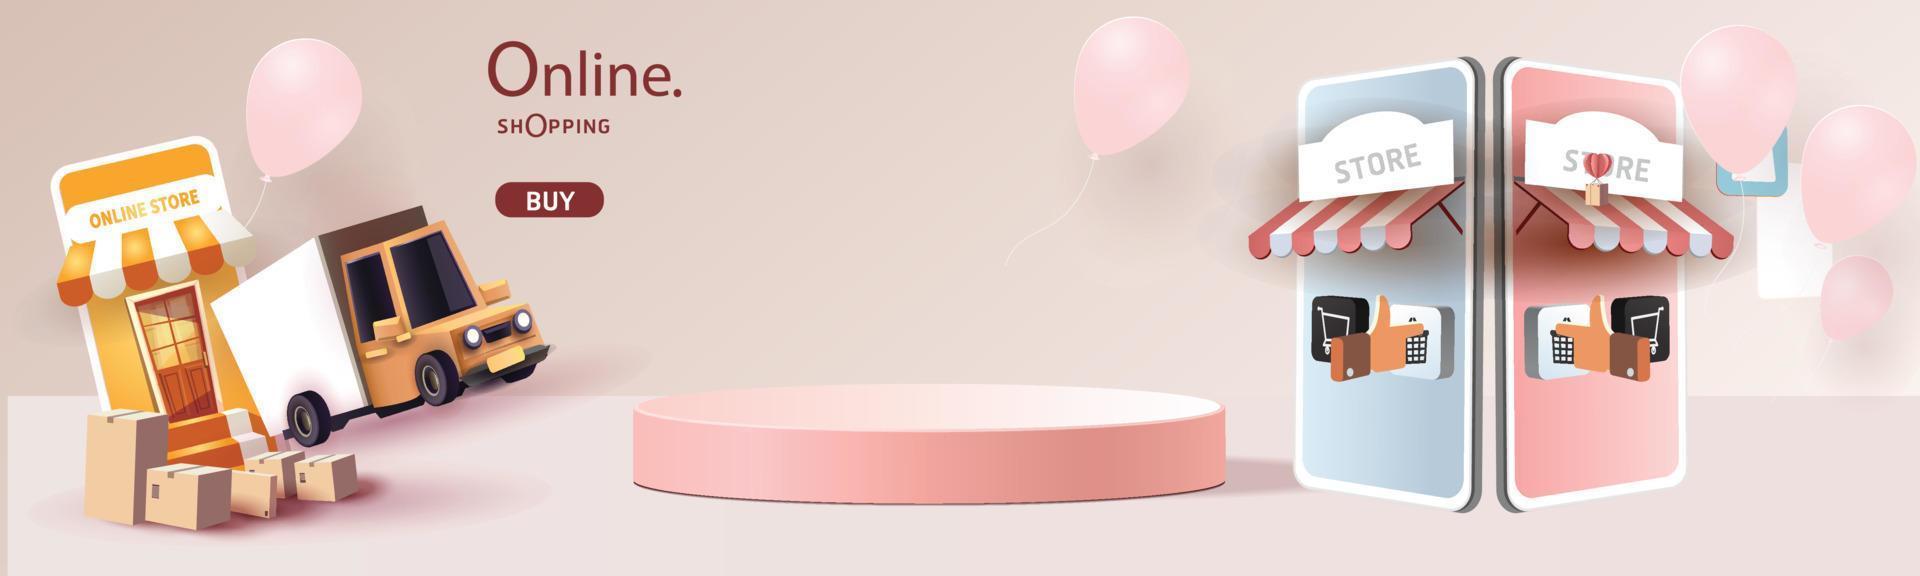 Online-Shopping am Telefon mit Podium Papierkunst moderner rosa Hintergrund Geschenkbox Illustration Vektor. vektor